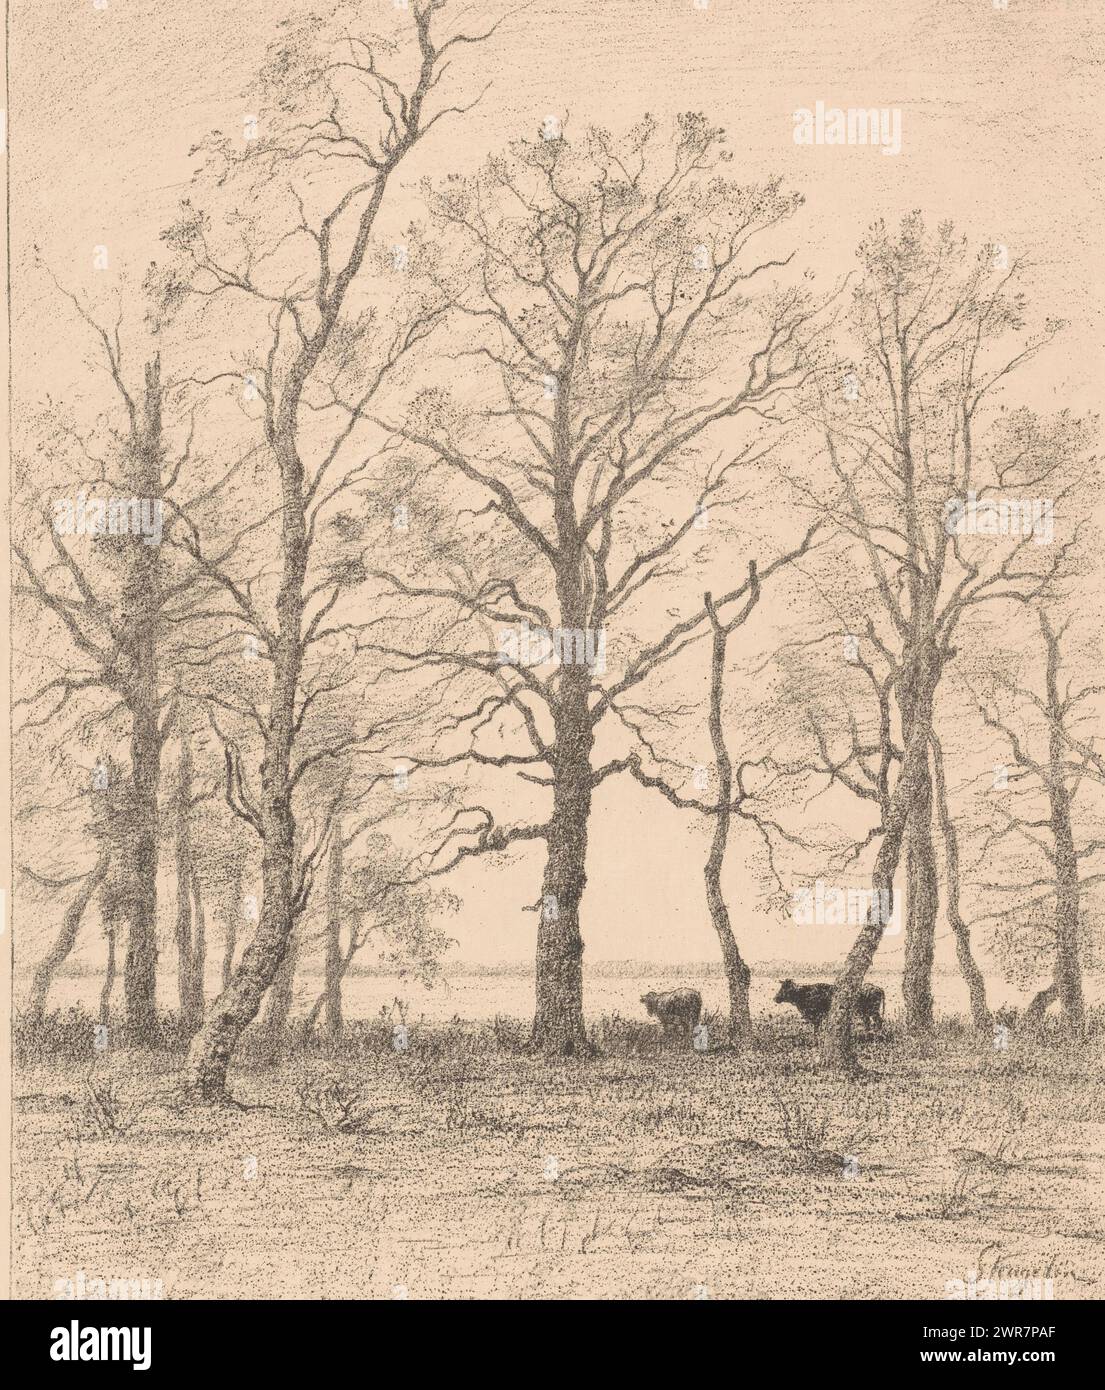 Paesaggio con alberi e due mucche, l'étang derrière les arbres, sotto la scena un ricordo della testa di un ariete., stampatore: Alphonse Stengelin, (firmato dall'artista), 1876 - 1910, carta, altezza 652 mm x larghezza 476 mm, stampa Foto Stock